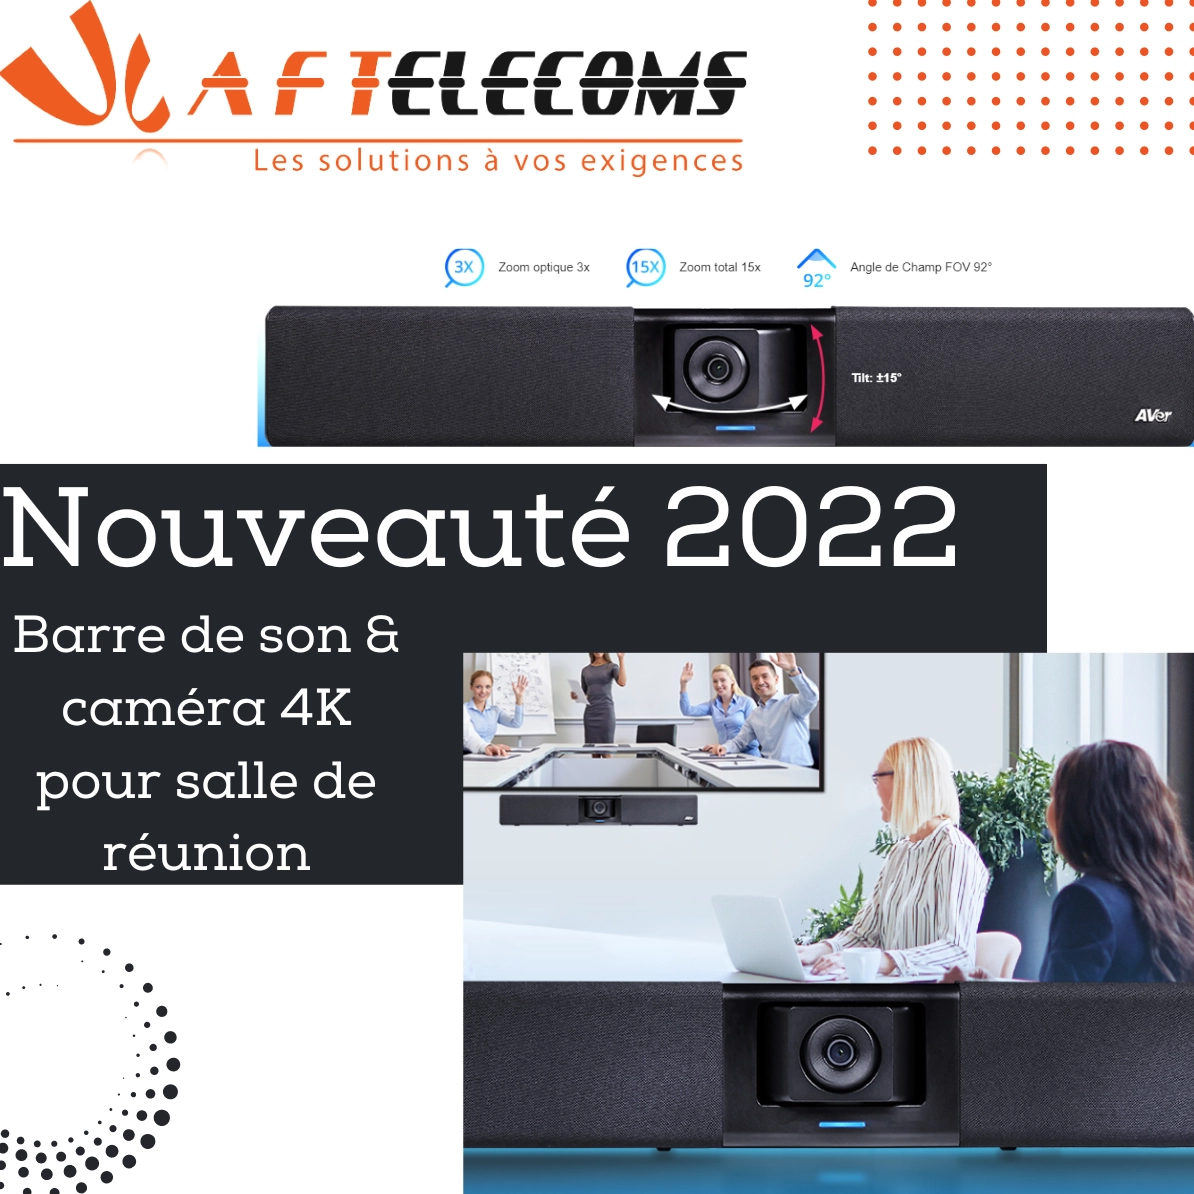 Nouveauté 2022 : Barre de son & caméra 4 K pour salle de réunion - Expert en téléphonie, télécoms, vidéosurveillance dans le Calvados